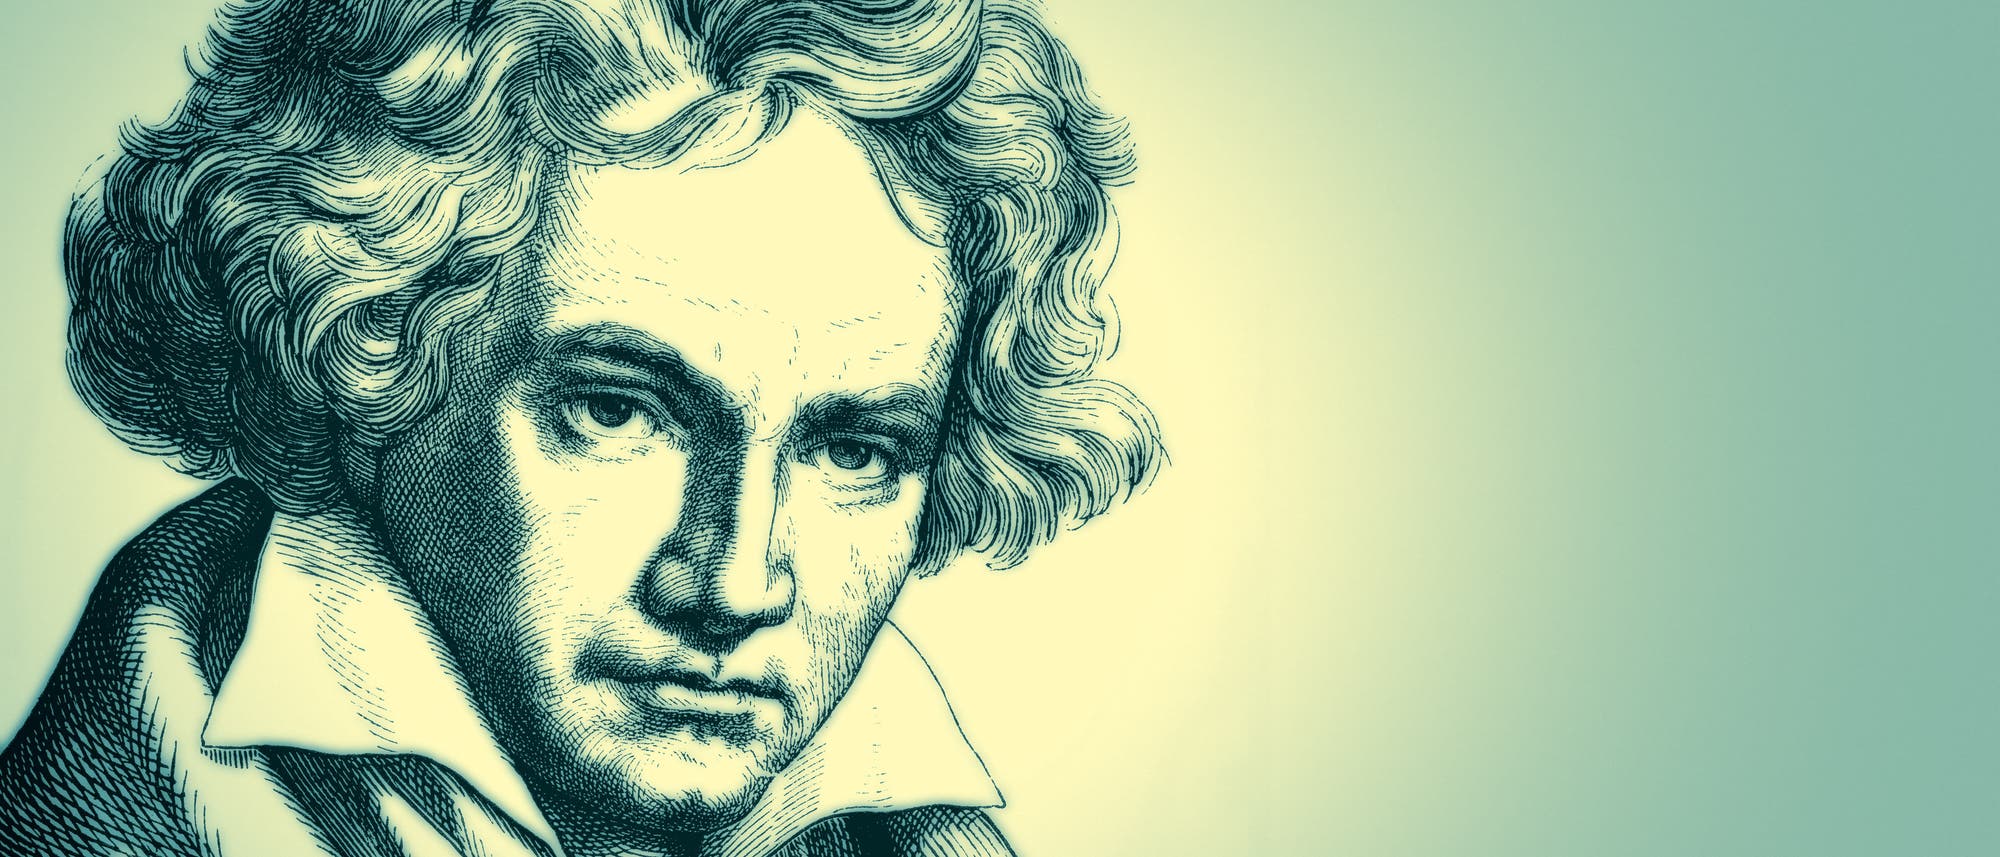 Zeichnung von Ludwig van Beethoven (1770 - 1827)